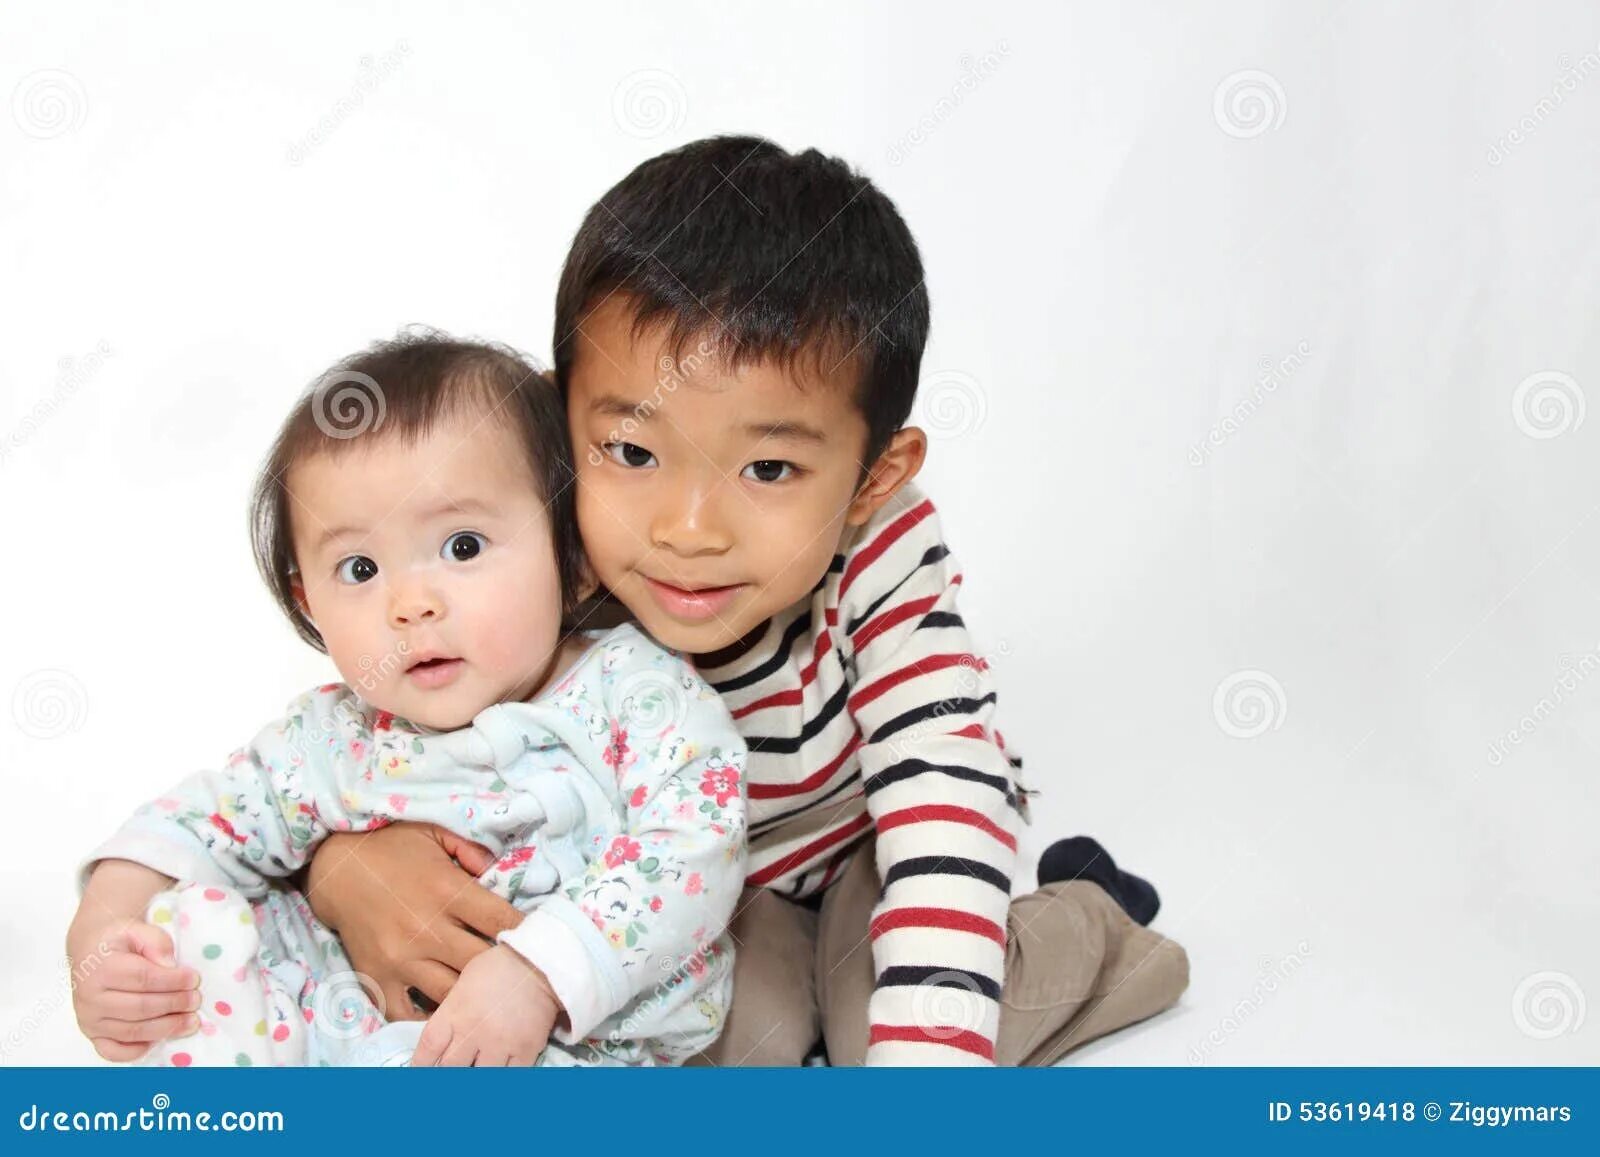 Младший брат японки. Брат и сестра на японском. Младший брат японец. Маленькие братики японцы. Фото японка брат и сестра.